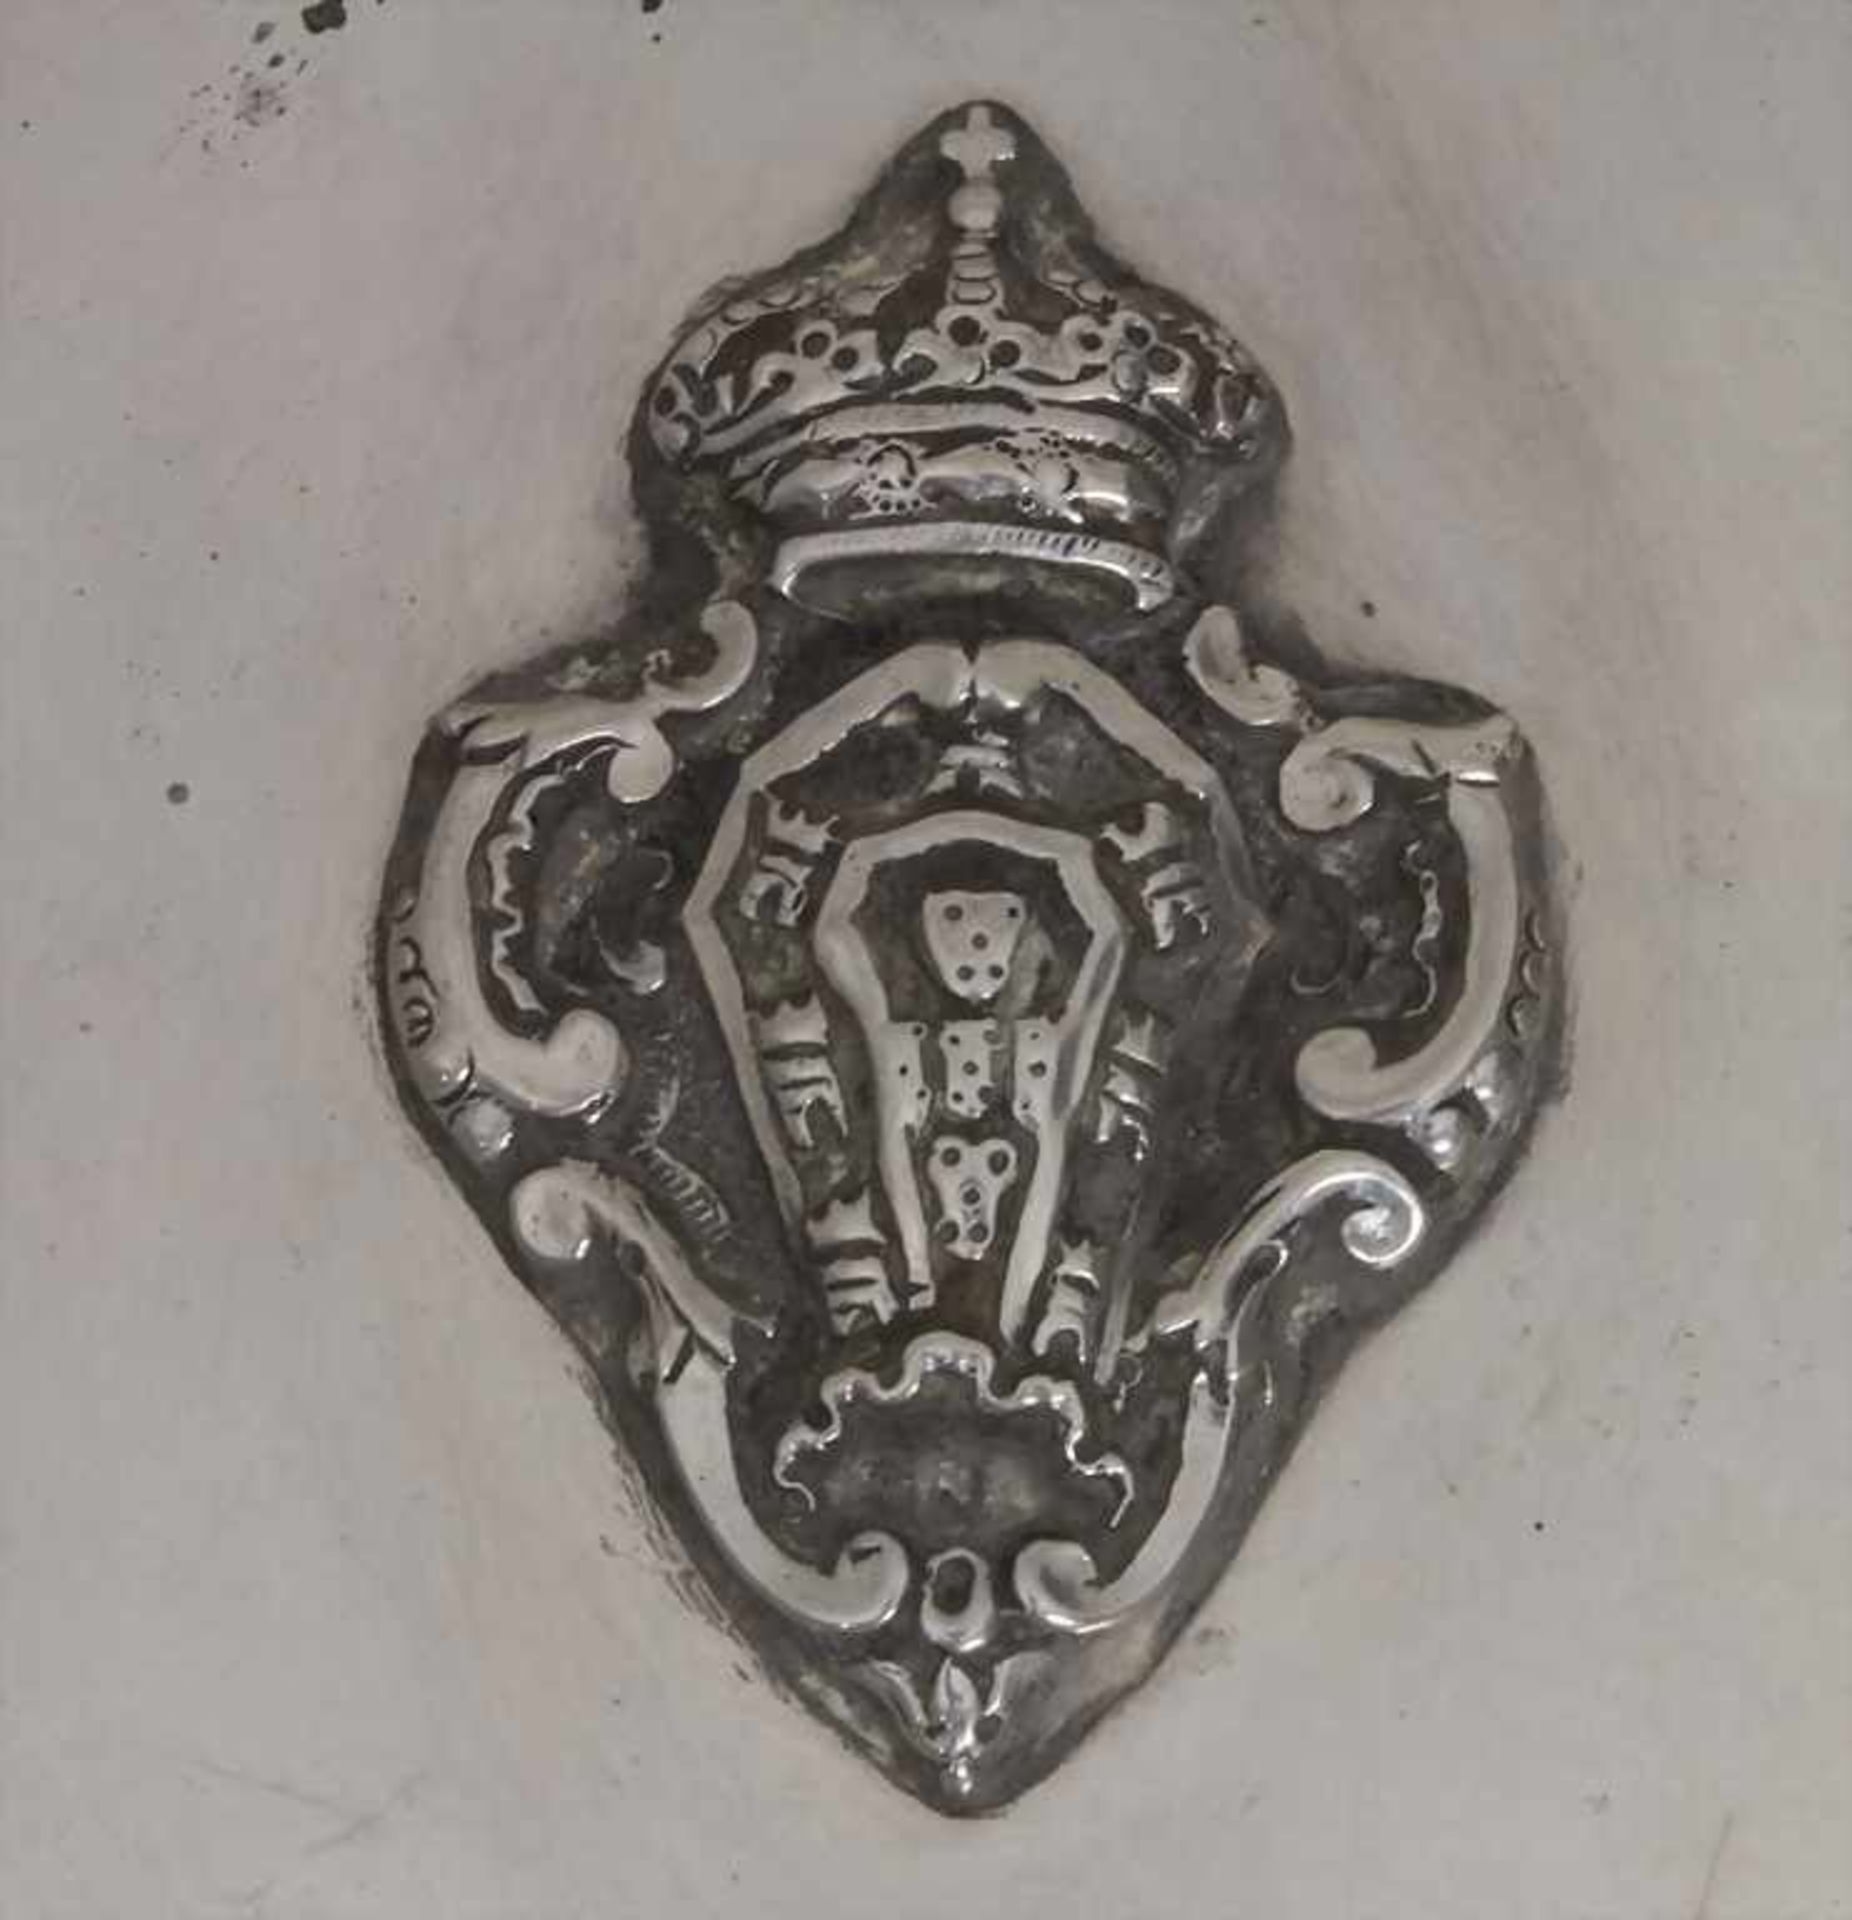 Deckeldose / A covered silver bowl, 19. Jh.Material: Silber 13 Lot, innen vergoldet, Adelswappen, - Bild 2 aus 4